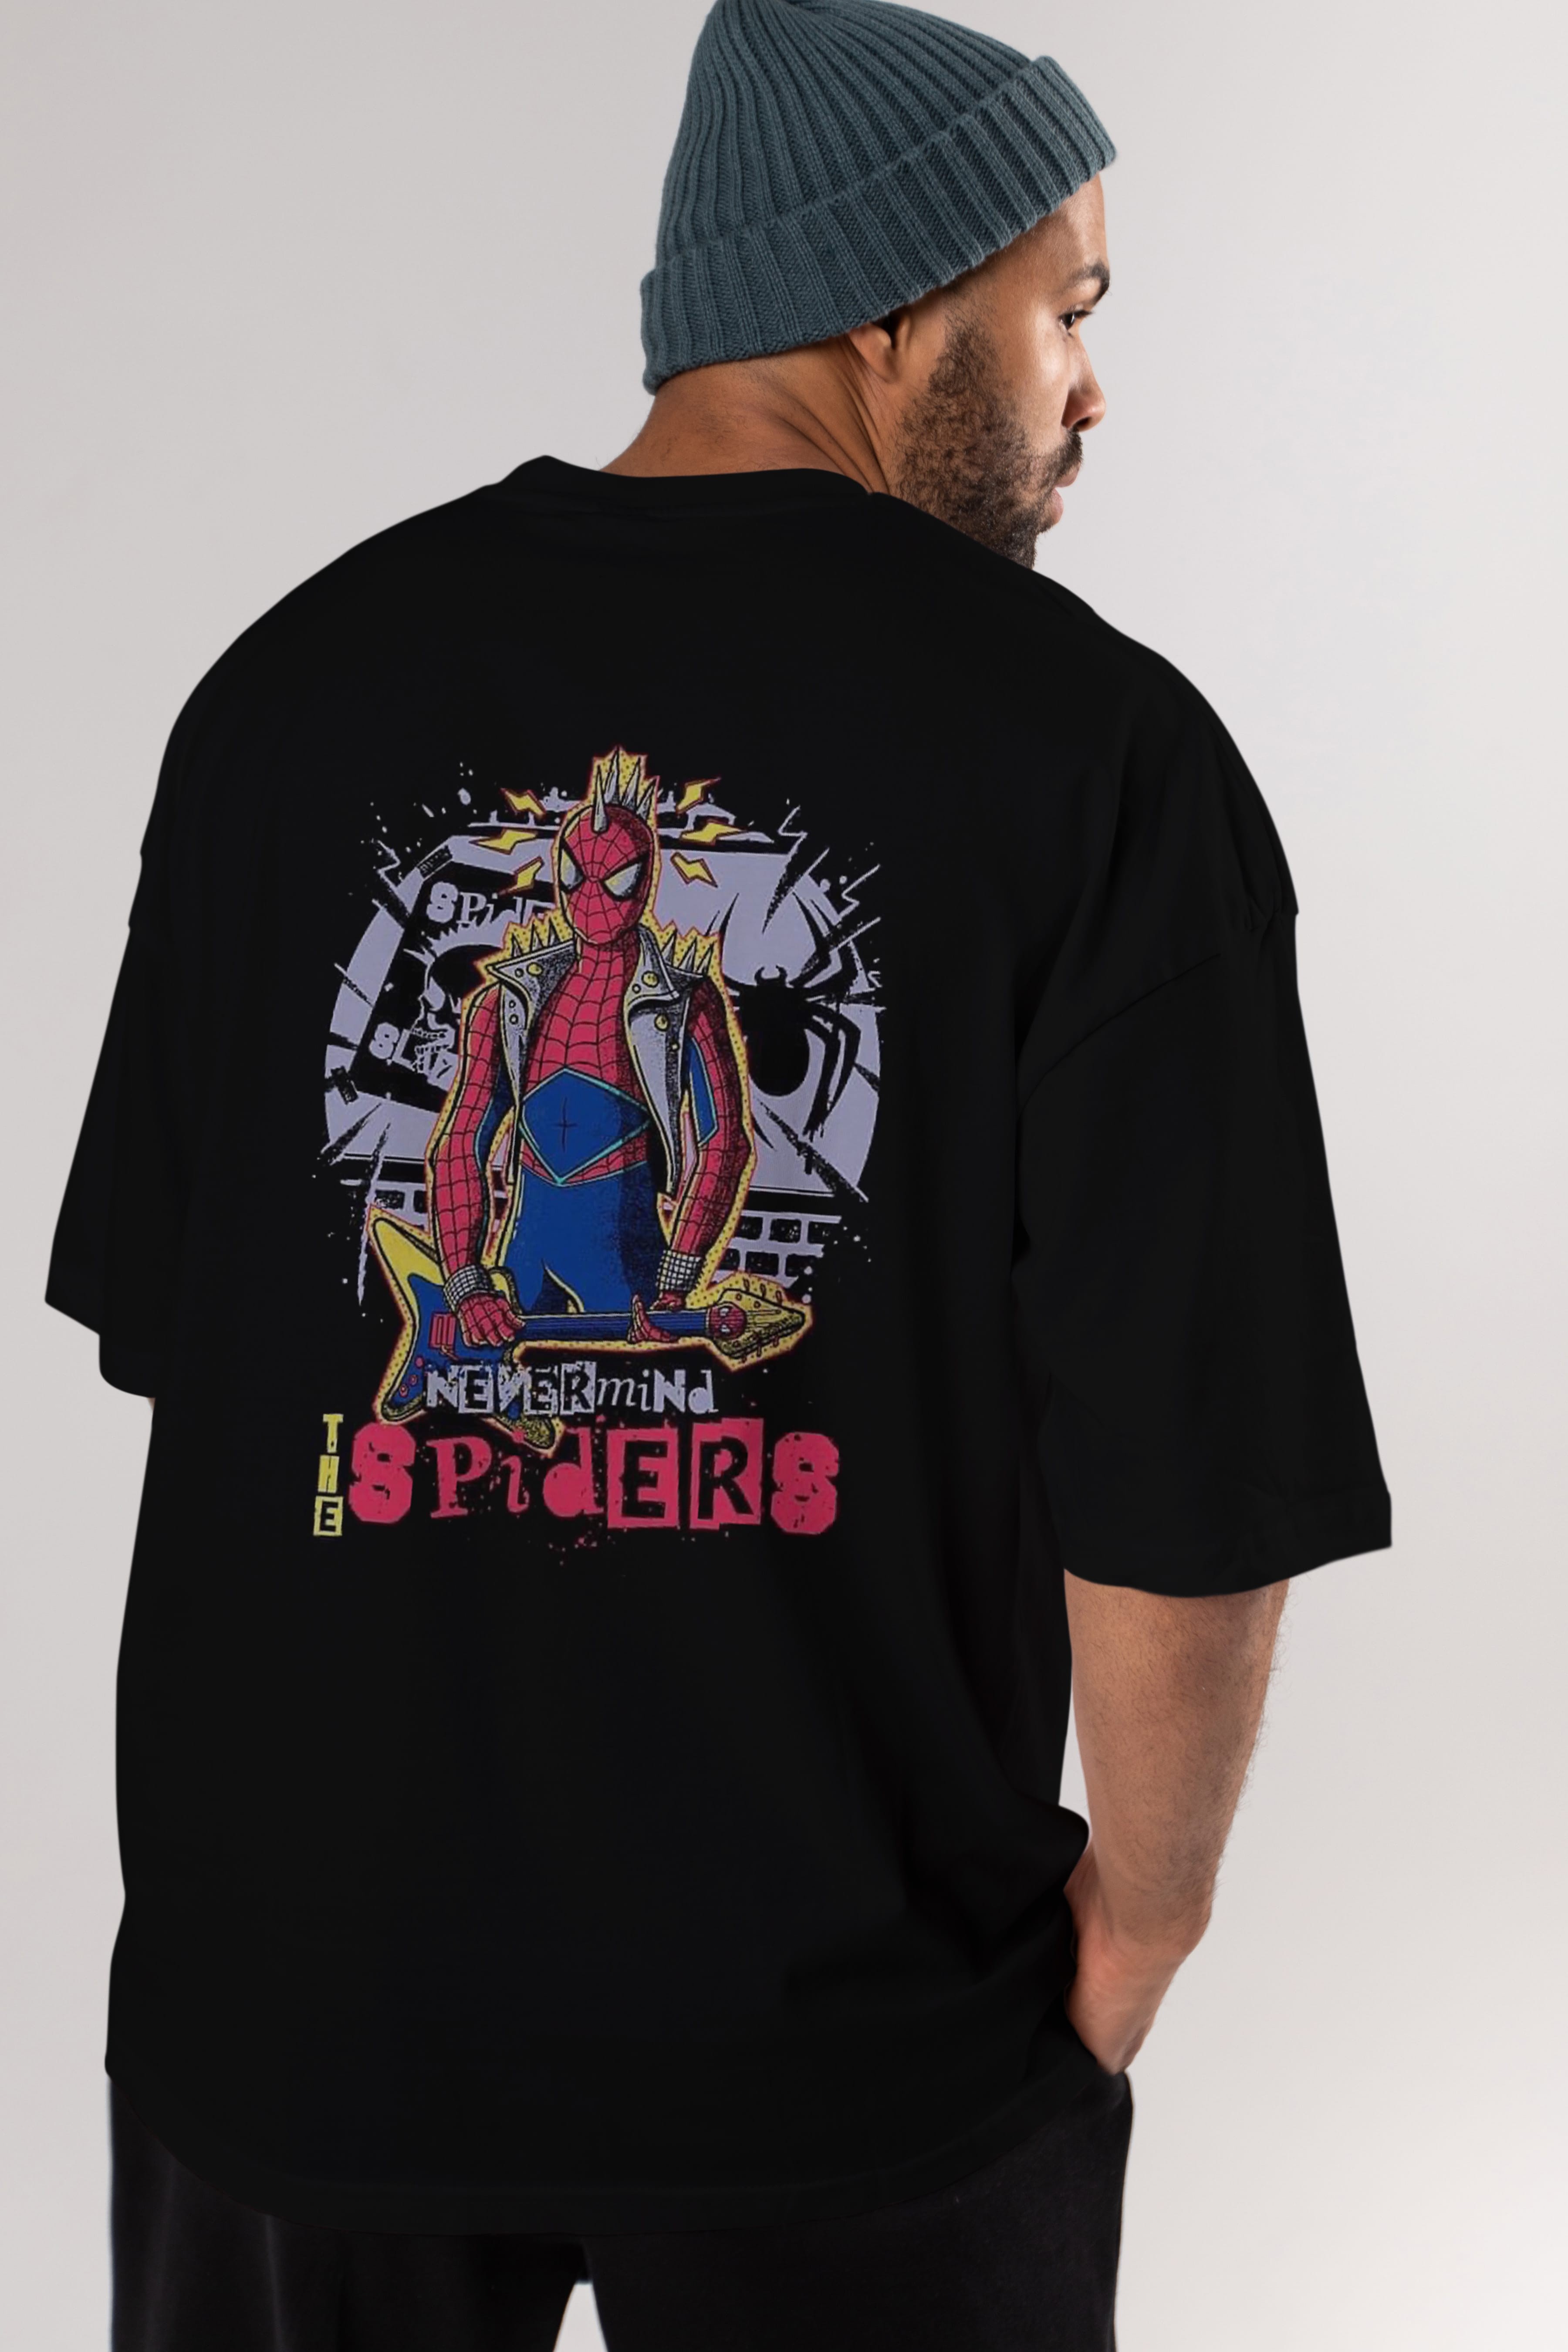 Spiderman Rock Arka Baskılı Oversize t-shirt Erkek Kadın Unisex %100 Pamuk Bisiklet Yaka tişort